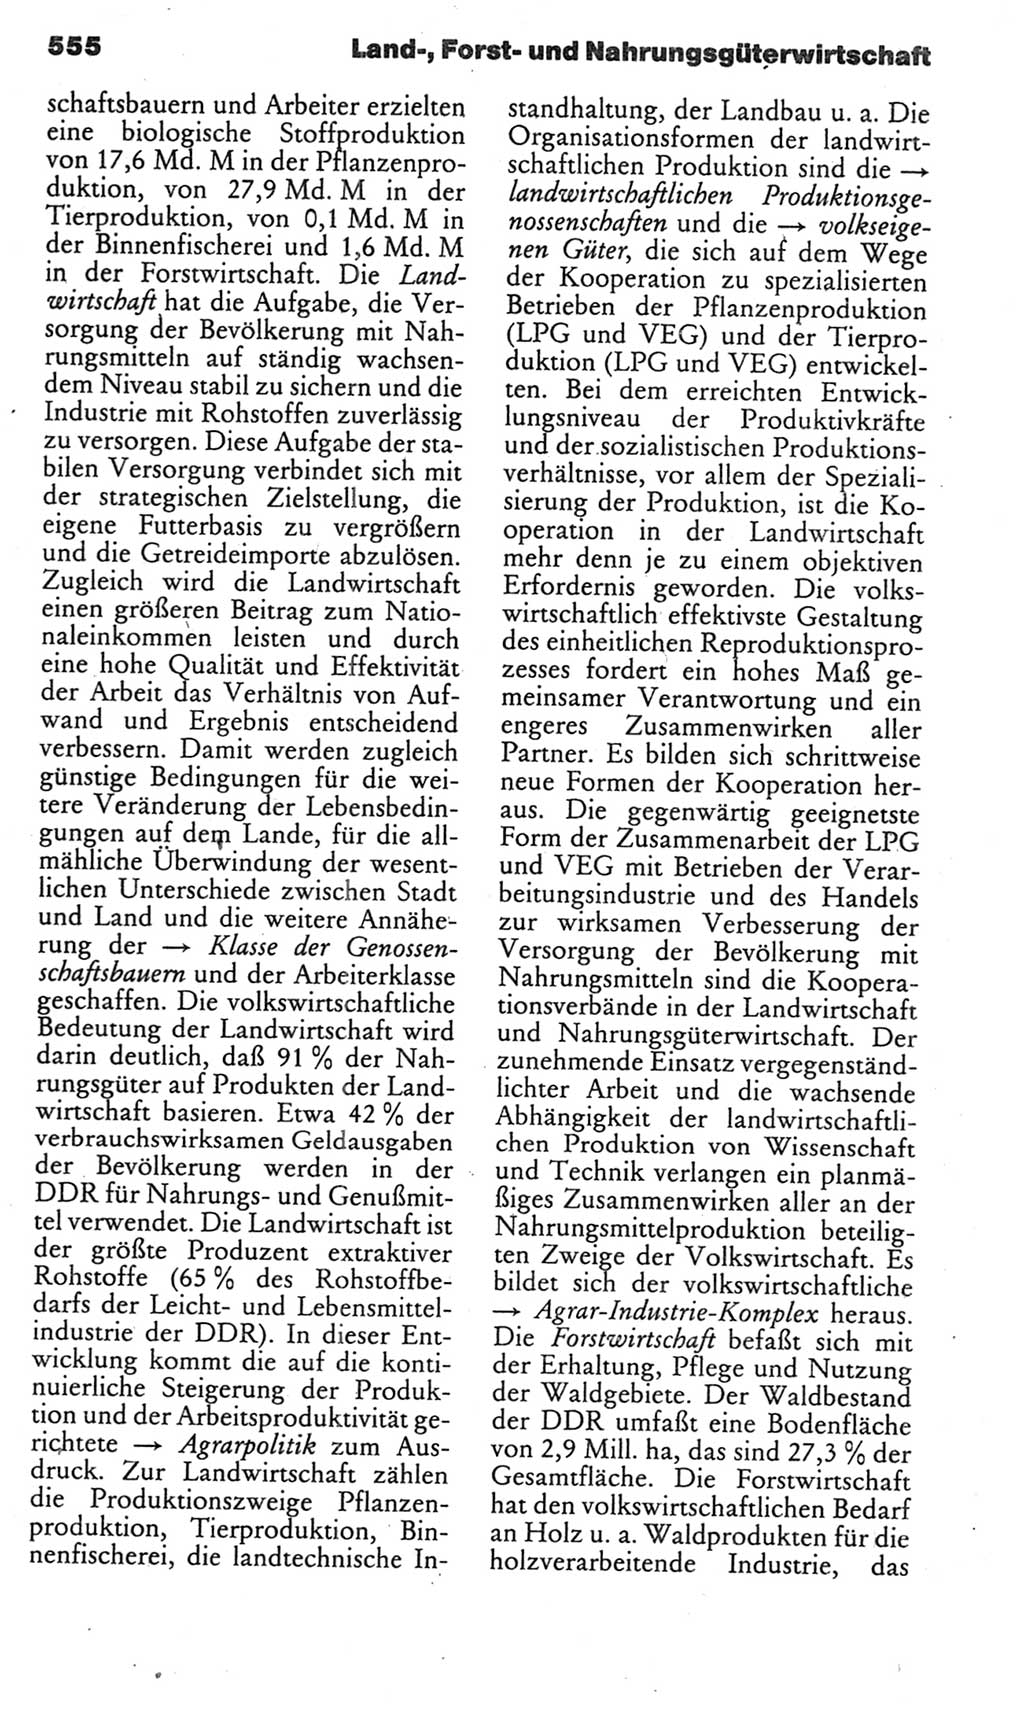 Kleines politisches Wörterbuch [Deutsche Demokratische Republik (DDR)] 1985, Seite 555 (Kl. pol. Wb. DDR 1985, S. 555)